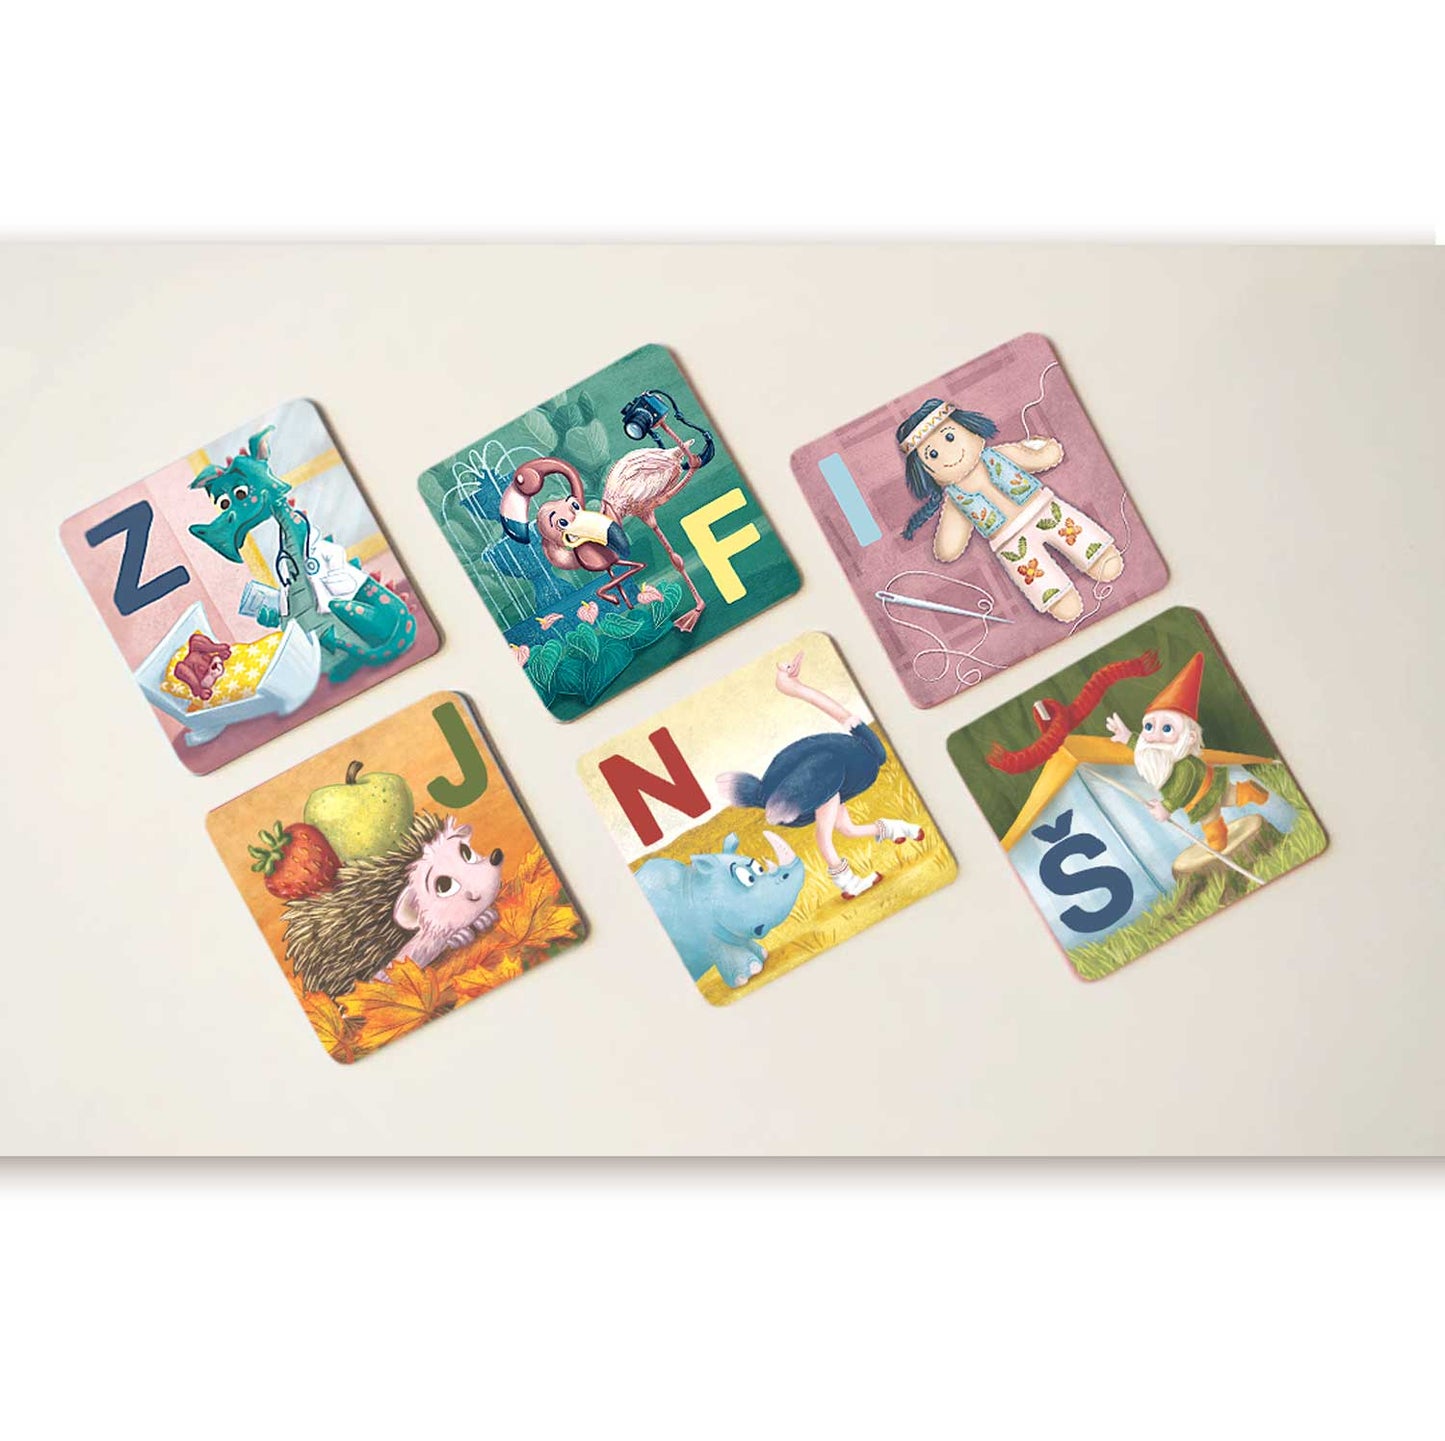 ABC igra spomin s simpatičnimi ilustracijami črk slovenske abecede ter besed na isto črko, ki skupaj ustvarjajo zgodbice. Vpliva na govorno-jezikovni razvoj otroka. 